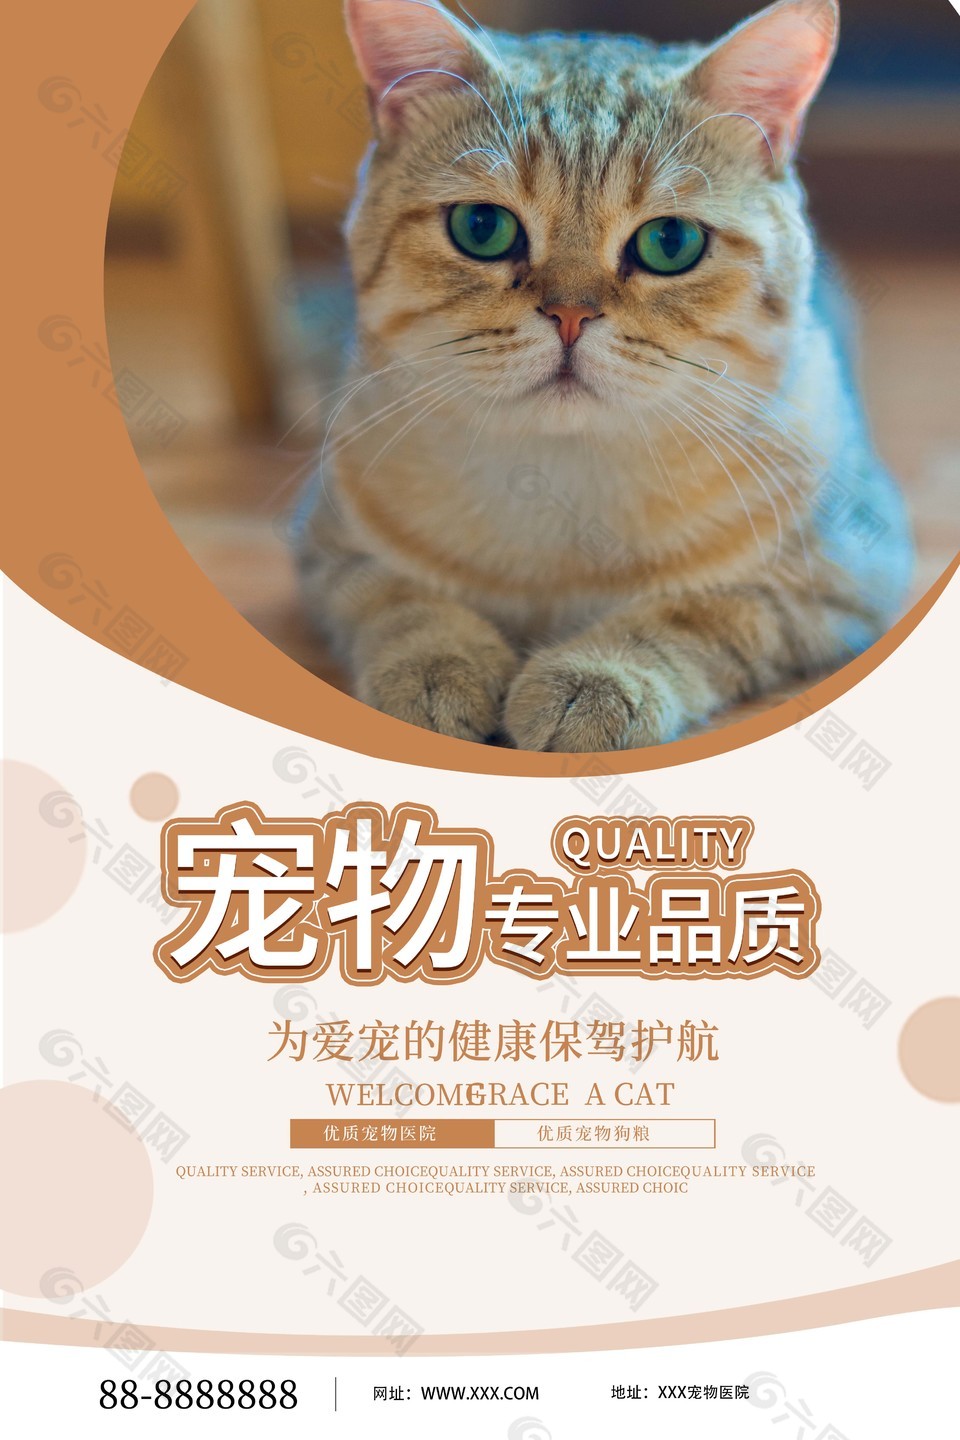 猫咪摄影图宠物店宣传海报设计